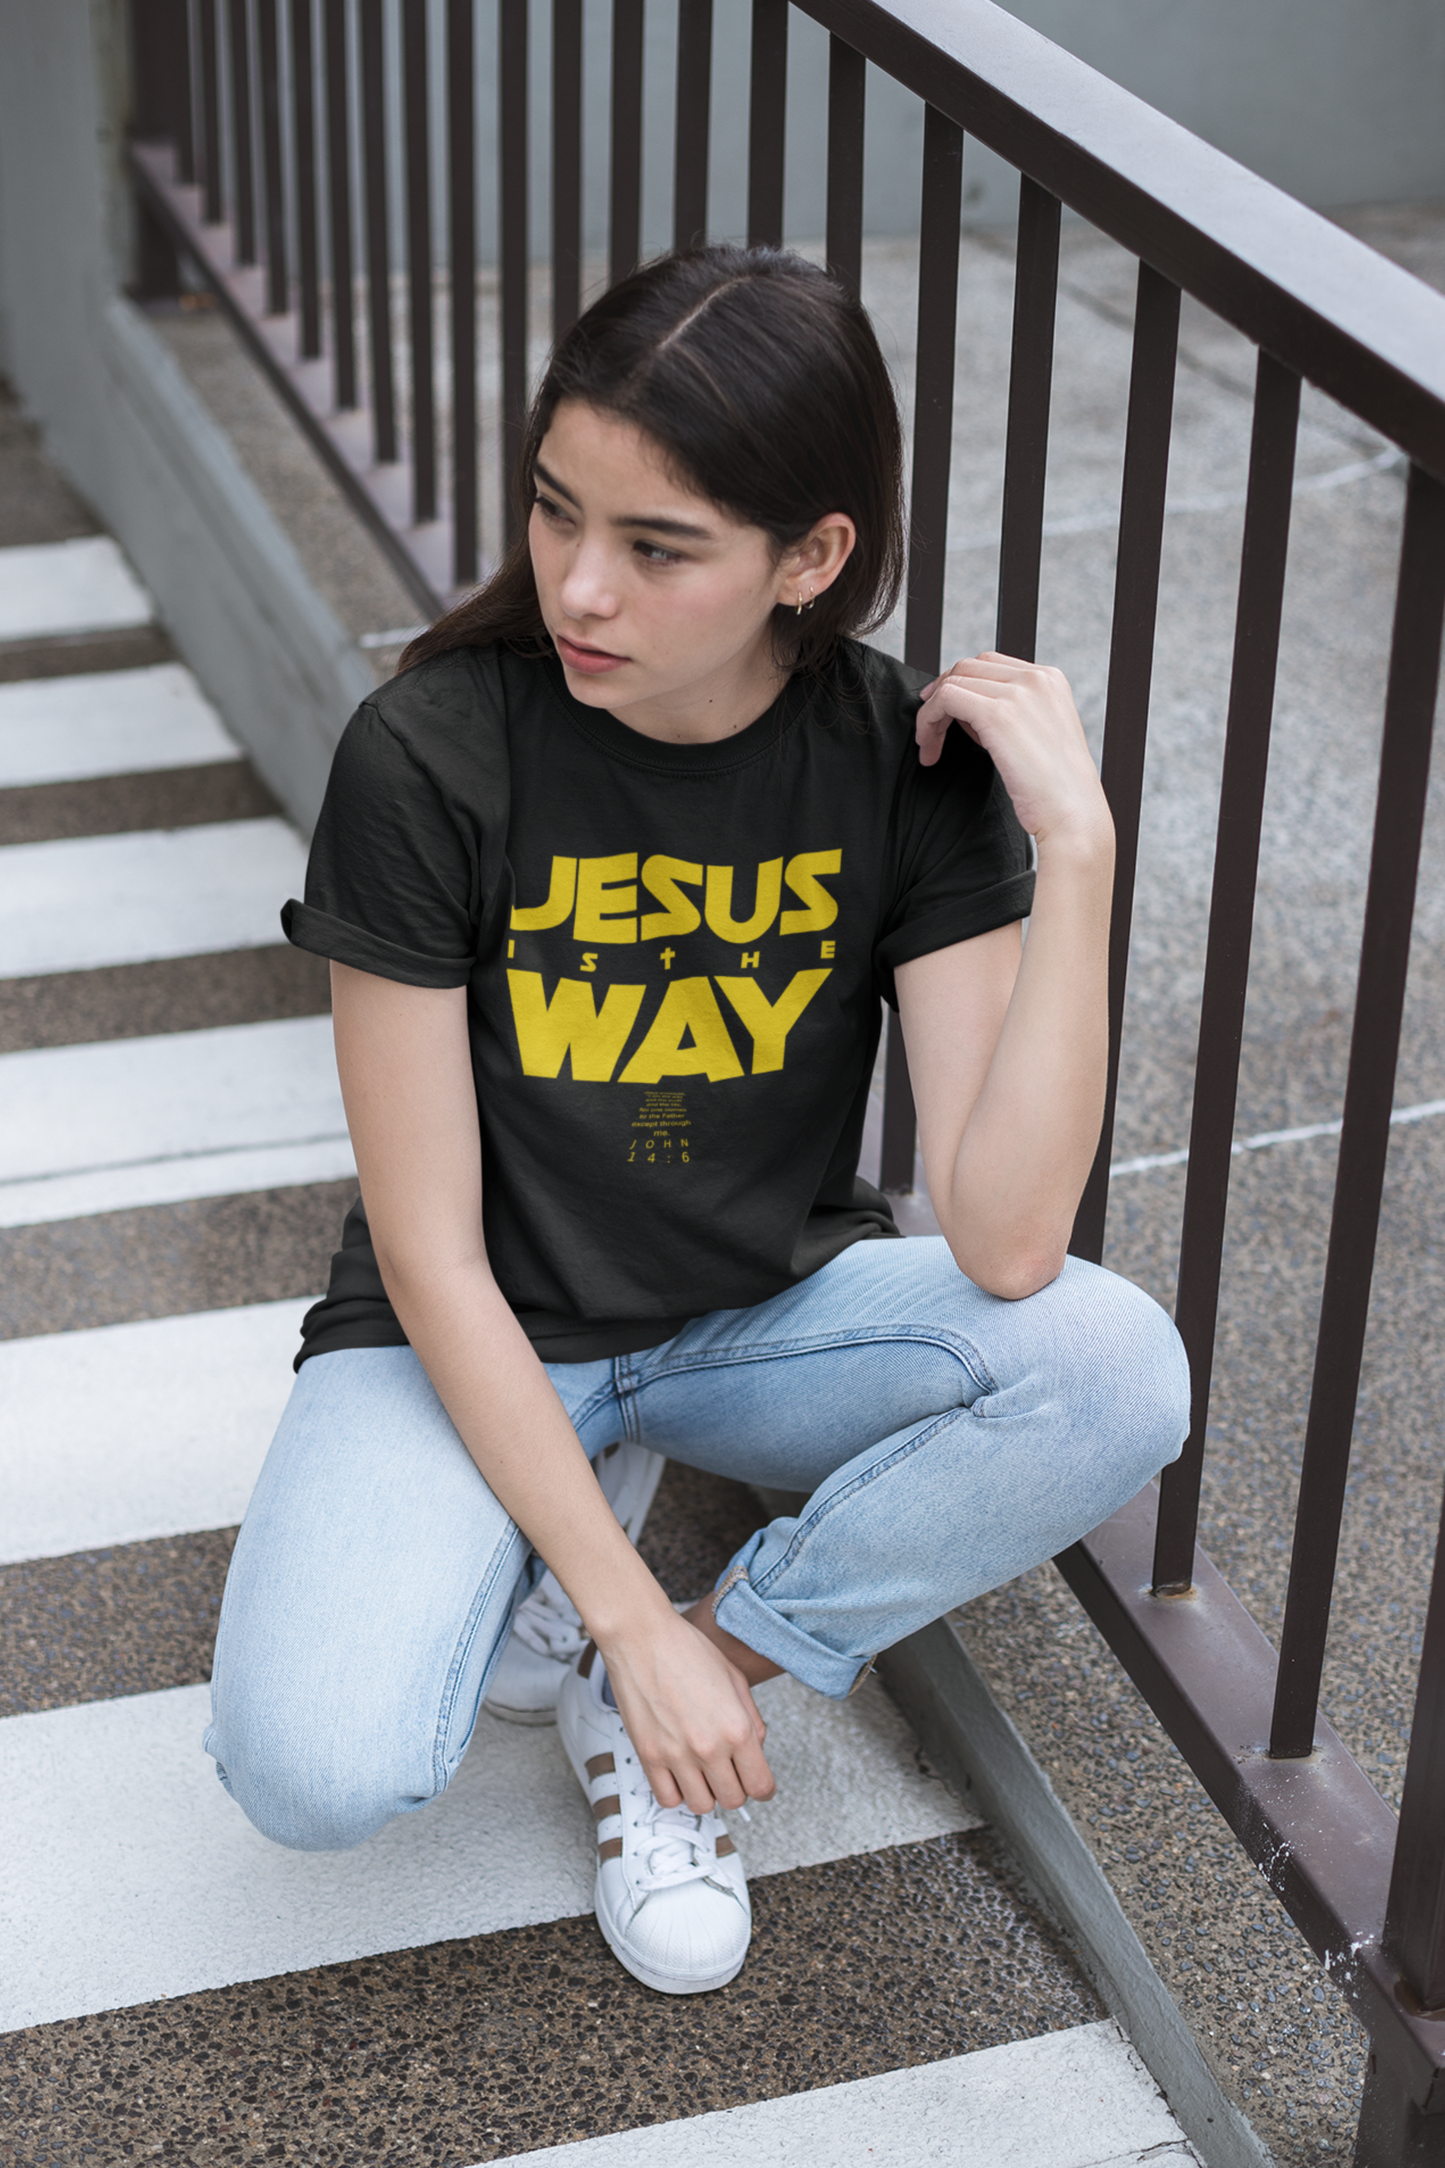 Jesus is the WAY. Tee.